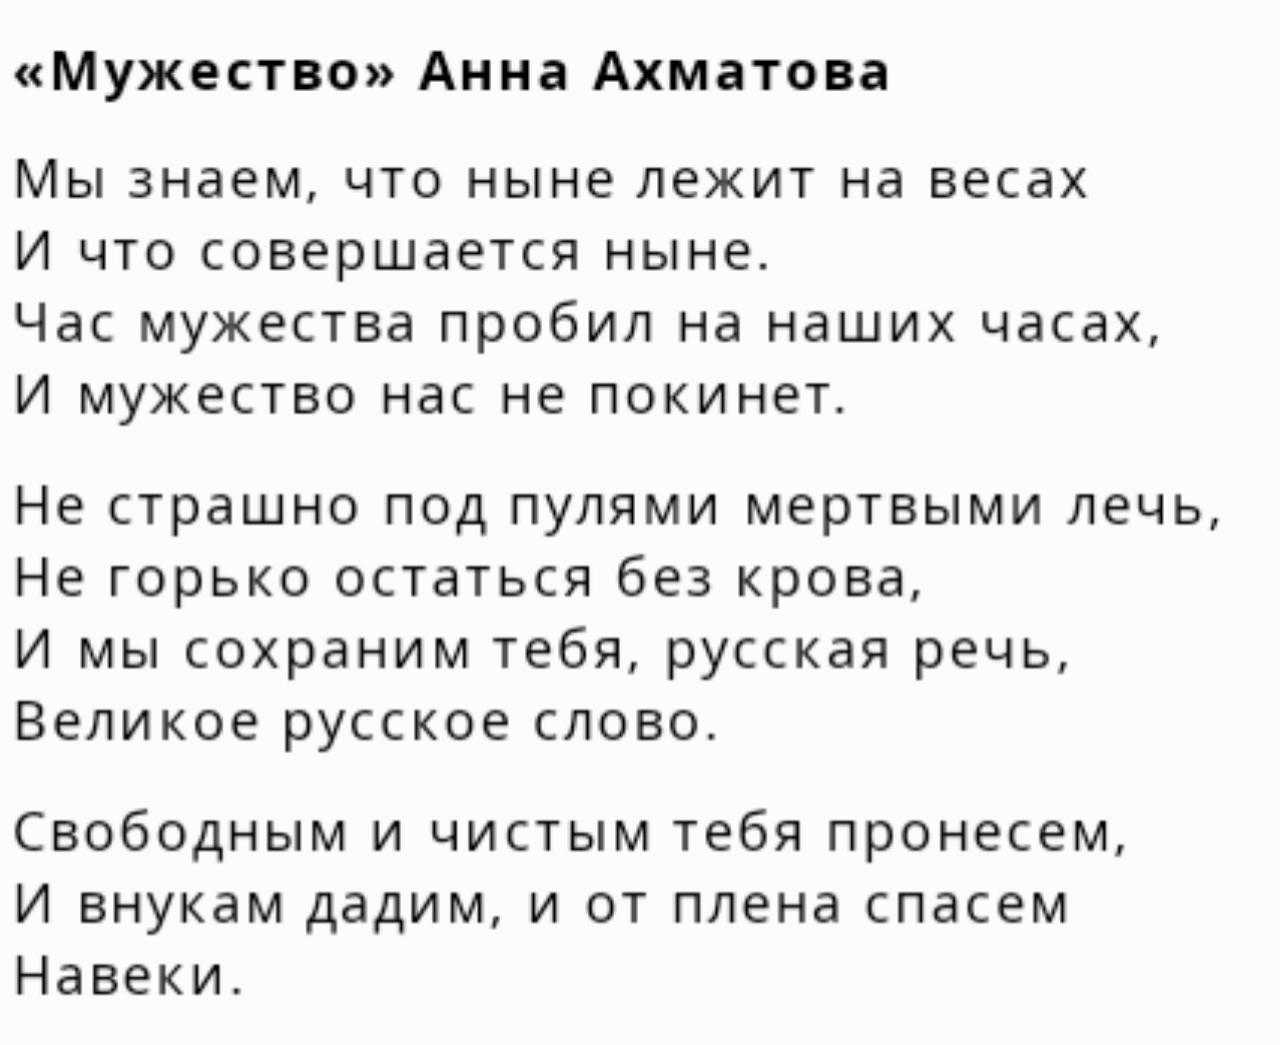 Анна ахматова — мужество: стихотворение, читать стих «мы знаем, что ныне лежит на весах» — poetry monster — стихочудовище